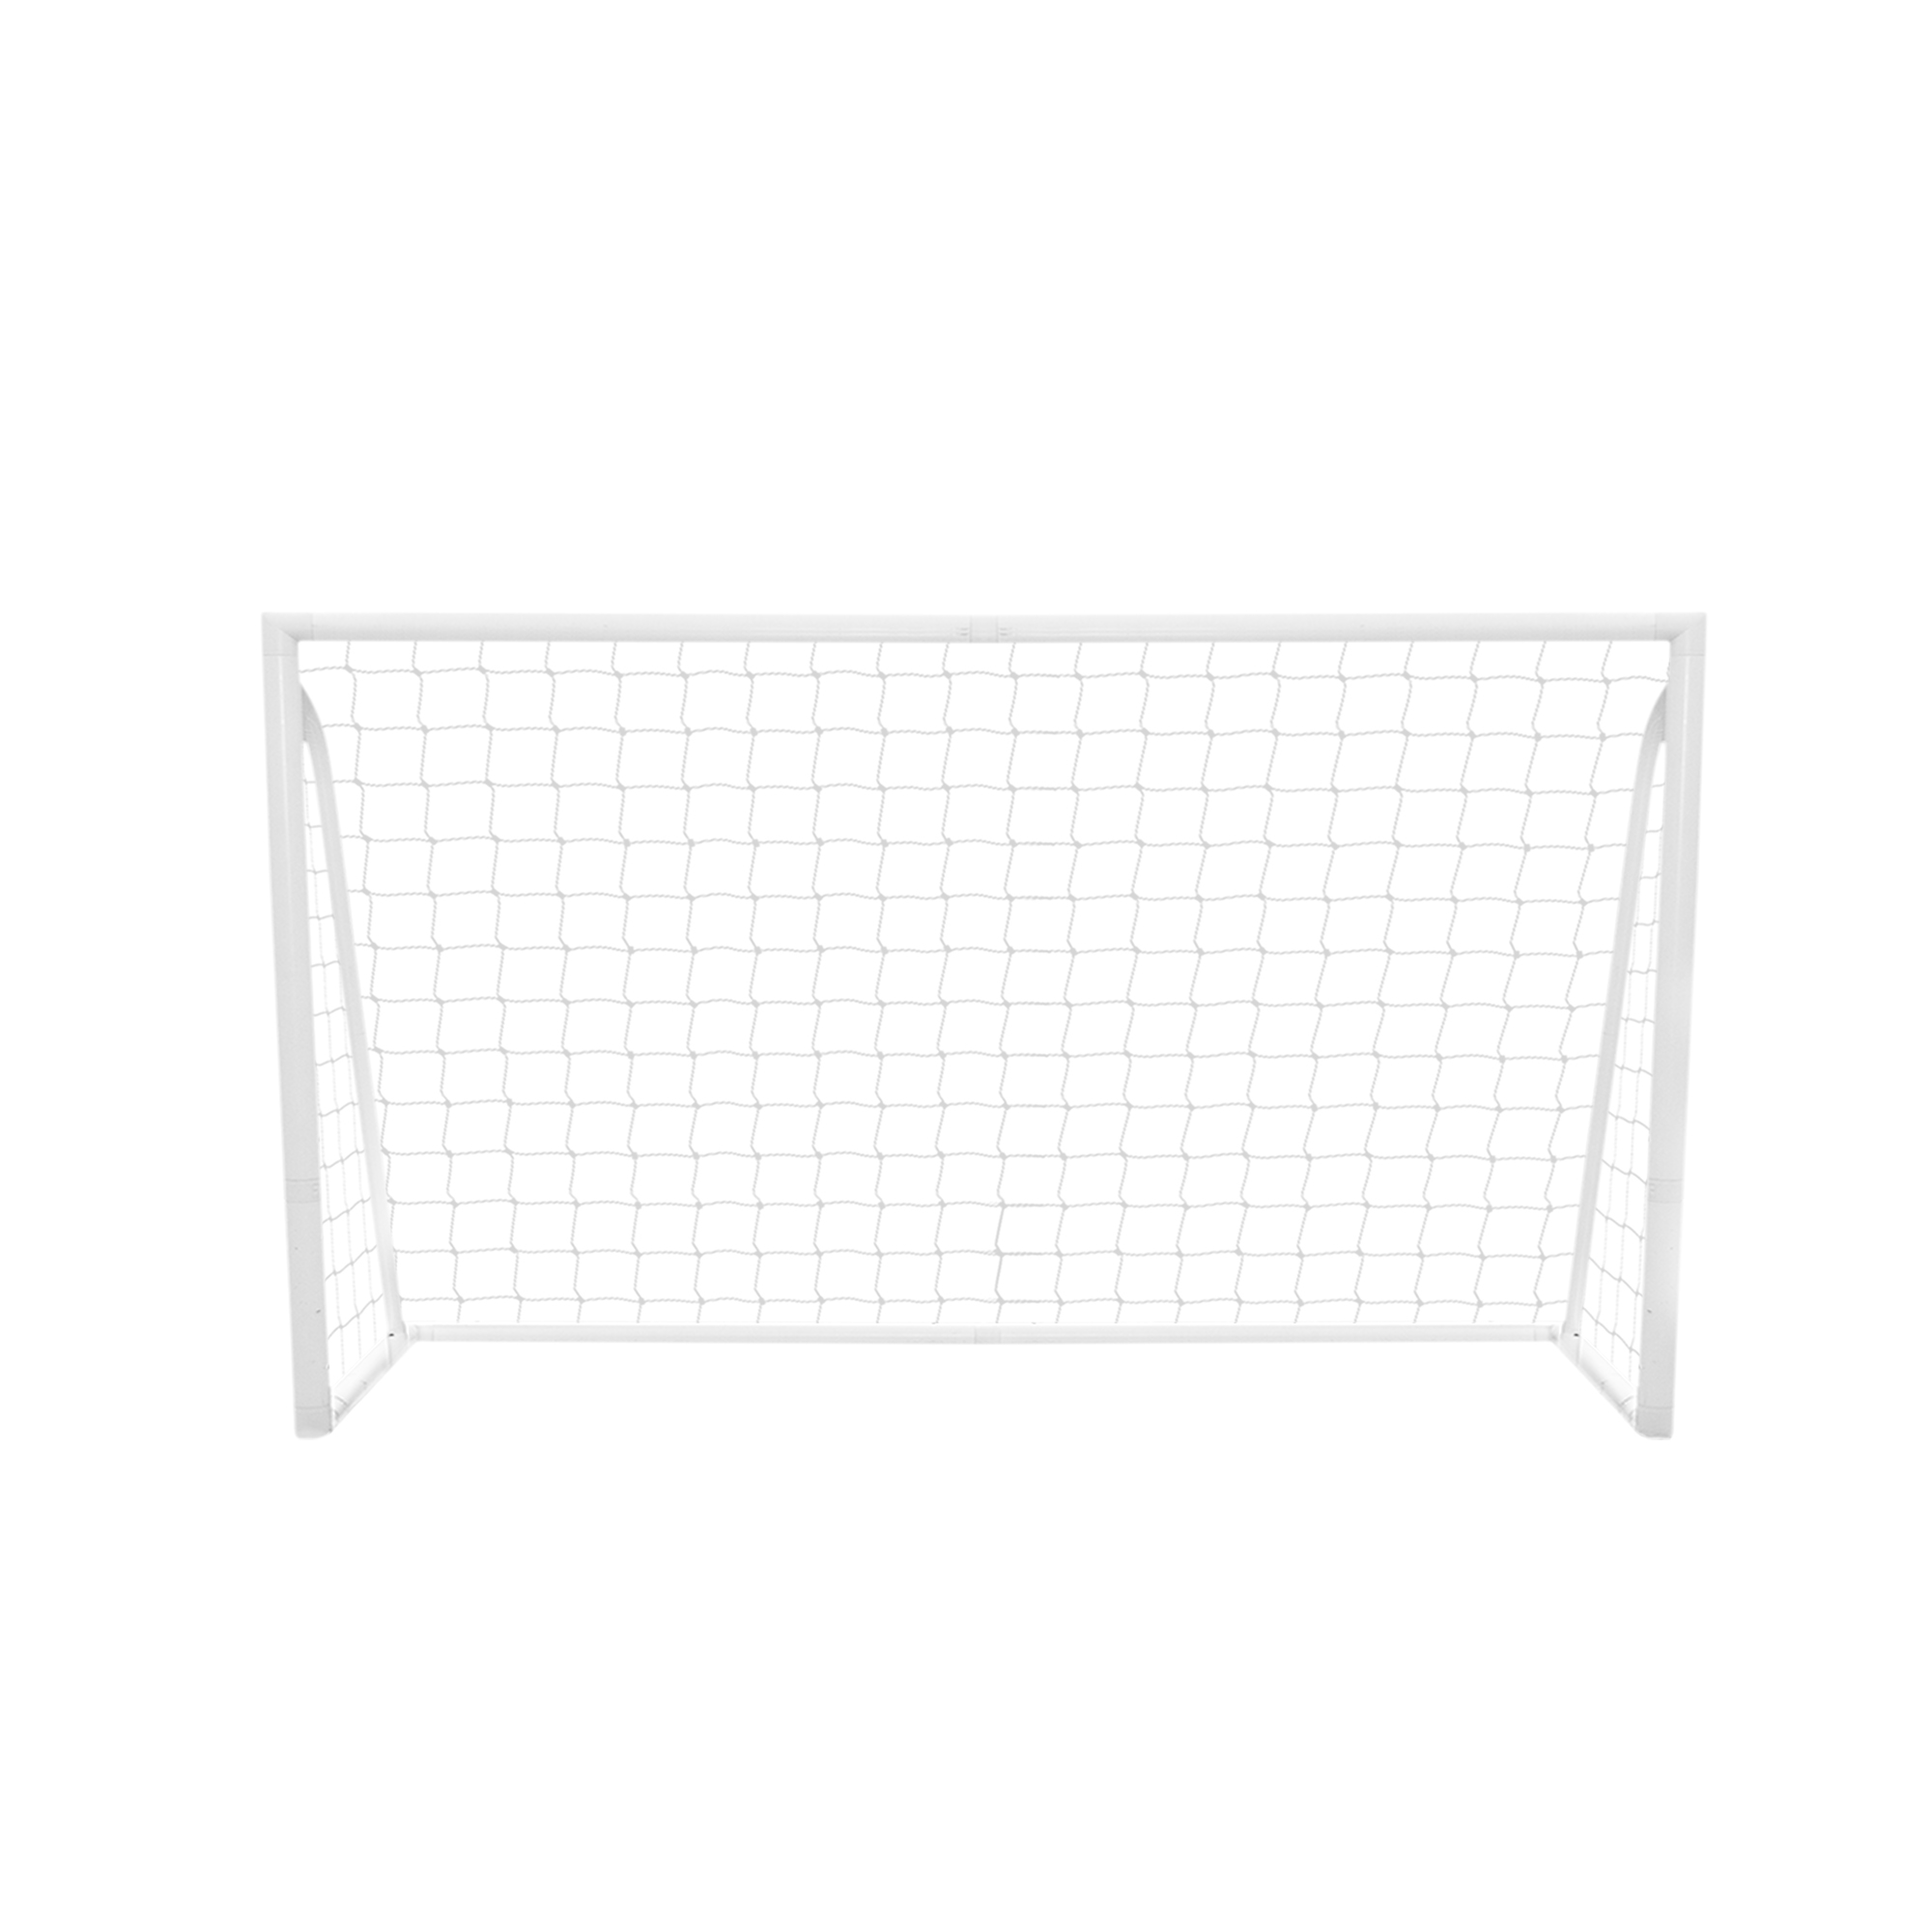 Fußballtor Goal Allwetter Fußballtraining PVC Geknotetes Netz für Garten Park Outdoor Mobil, Leicht zu tragen & aufzubauen mit Klicksystem 5 Schusslöchern Torwand Spanngurten & Tragetasche 1,8 x 1,2m